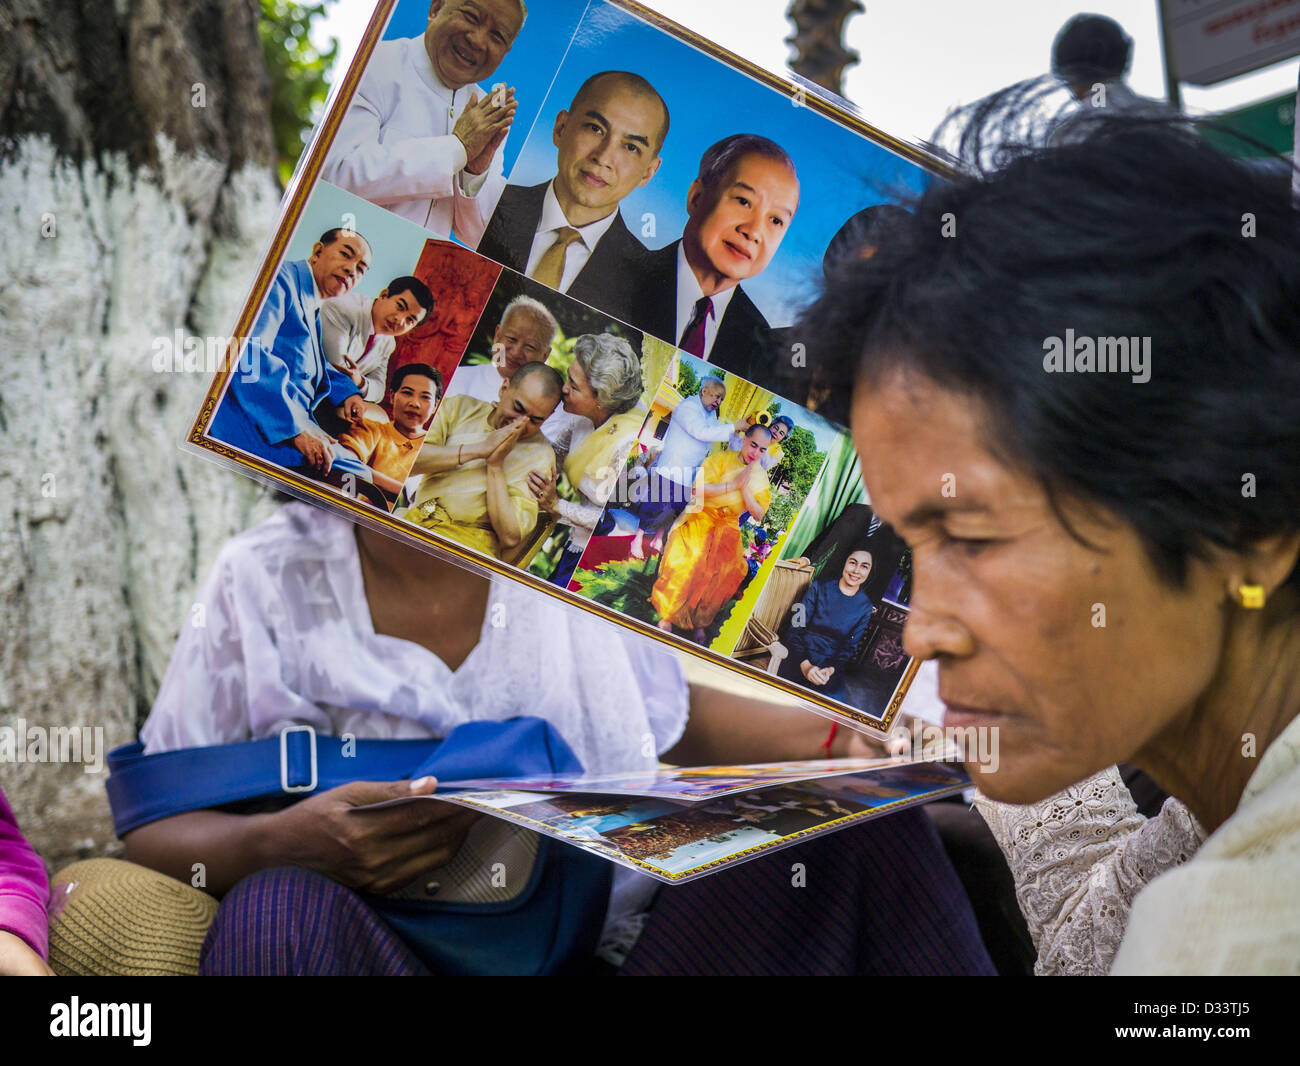 Febbraio 2, 2013 - Phnom Penh Cambogia - Una donna conserva le foto del defunto re Norodom Sihanouk durante il periodo del lutto per Sihanouk, che hanno governato la Cambogia, dall'indipendenza nel 1953 fino a che egli è stato rovesciato da un golpe militare nel 1970. Sihanouk è morto a Pechino, in Cina, in ottobre 2012. (Credito Immagine: © Jack Kurtz/ZUMAPRESS.com) Foto Stock